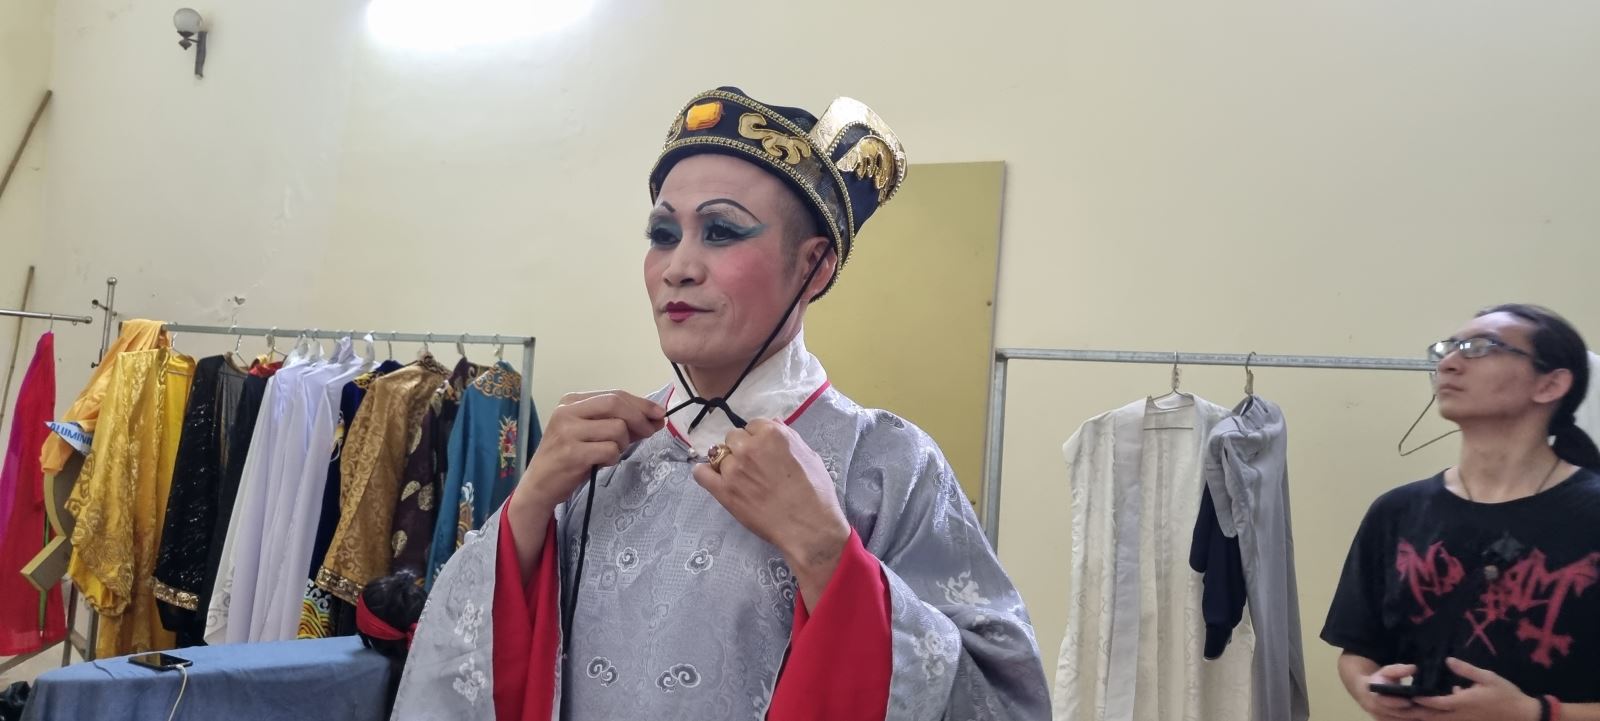 Nghệ sĩ Nguyễn Thuân, Nhà hát Cải lương Việt Nam, hoàn thiện khâu hóa trang cuối cùng cho vai diễn thái giám.